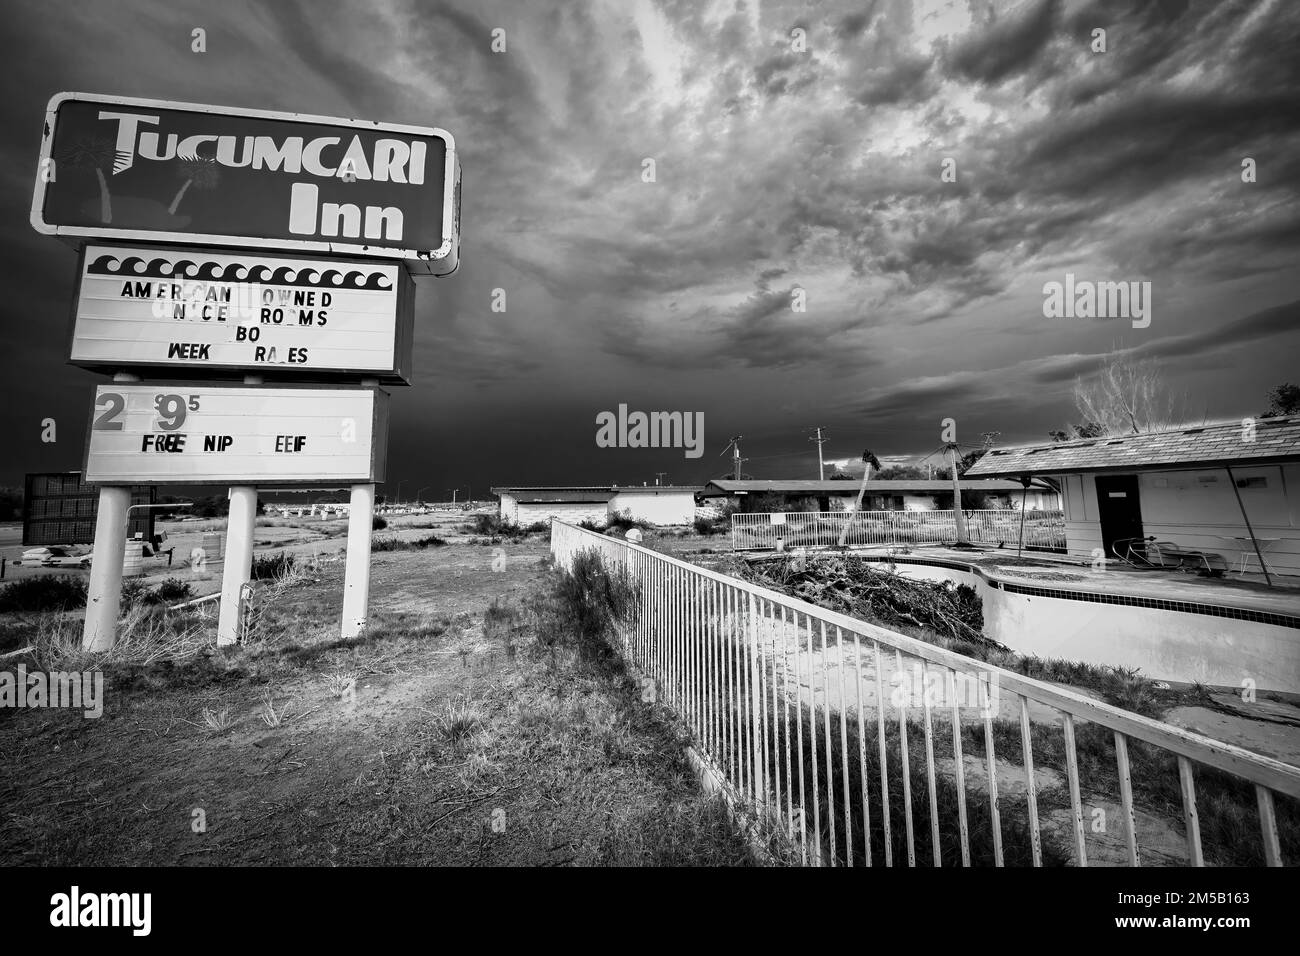 Hinter dem verlassenen Tucumcari Inn an der historischen Route 66 in Tucumcari, New Mexico, Braut sich ein Sturm auf Stockfoto